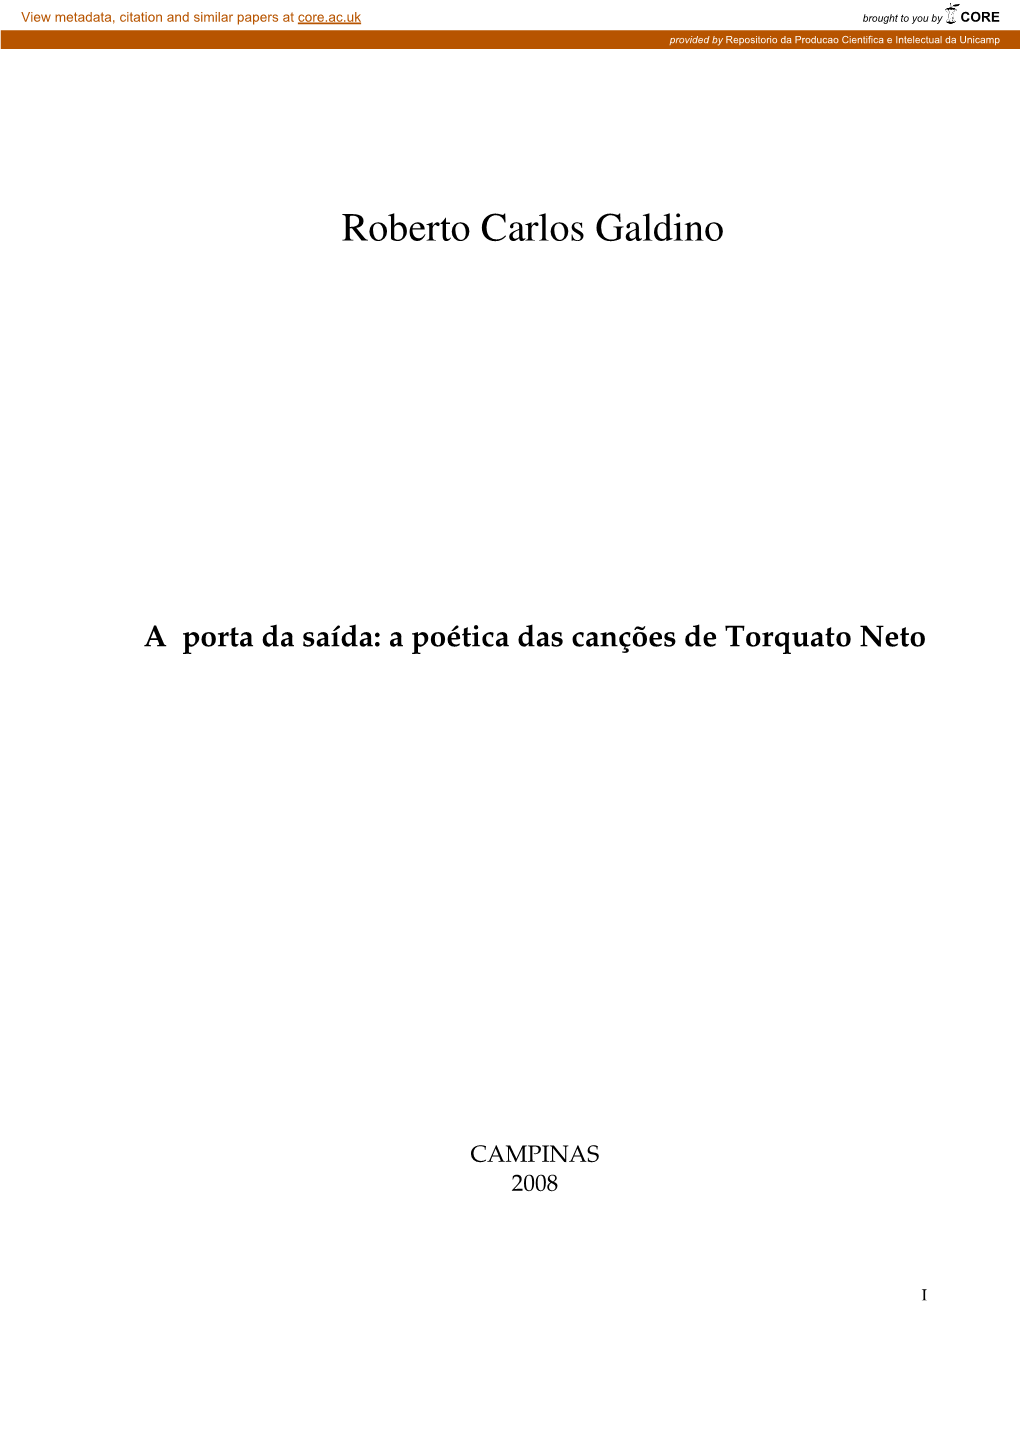 Roberto Carlos Galdino